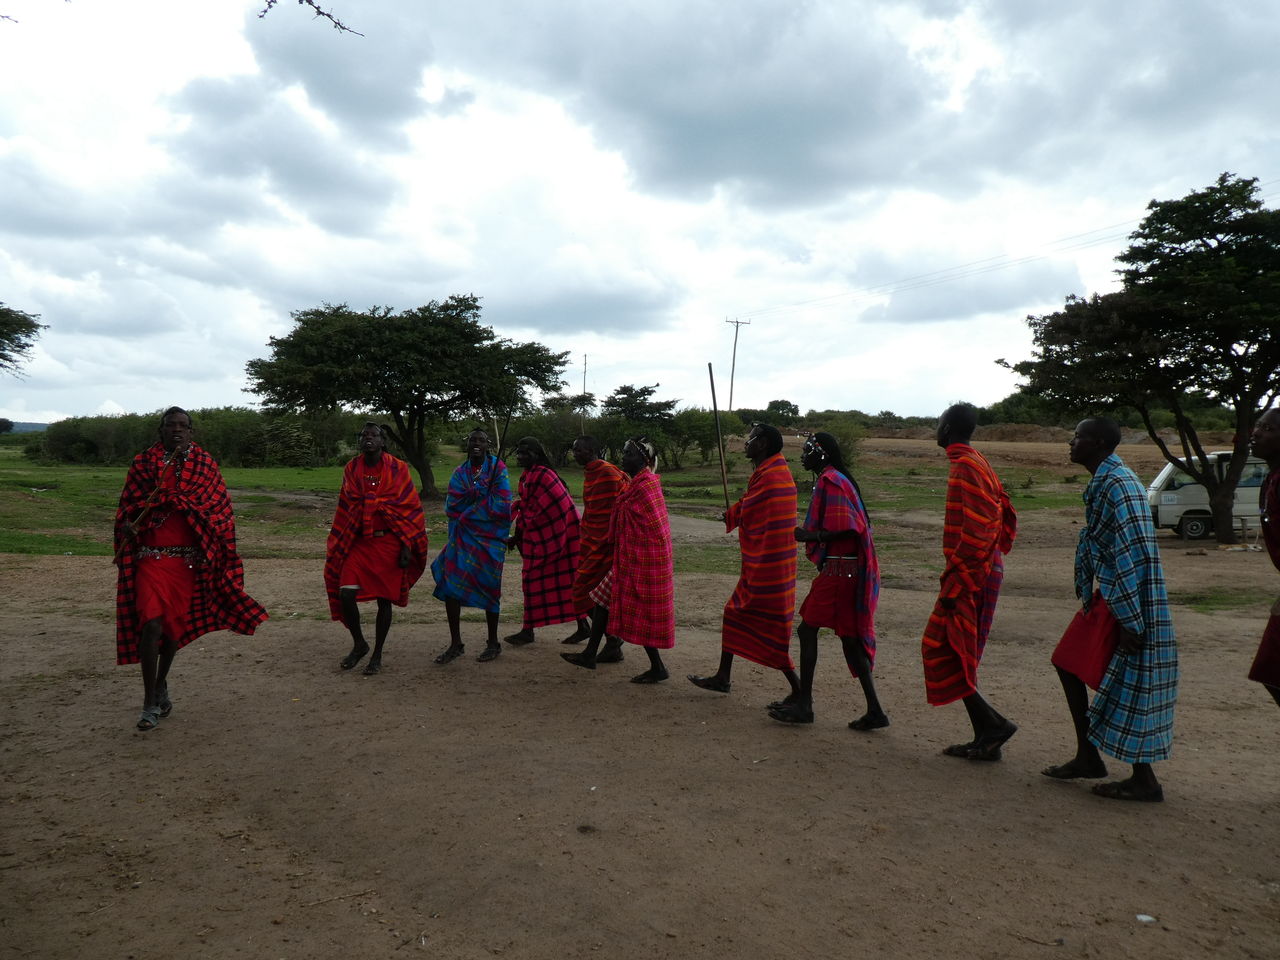 ケニア タンザニア旅行 その６ マサイ族の村訪問 ひまがあれば海外 女子一人旅